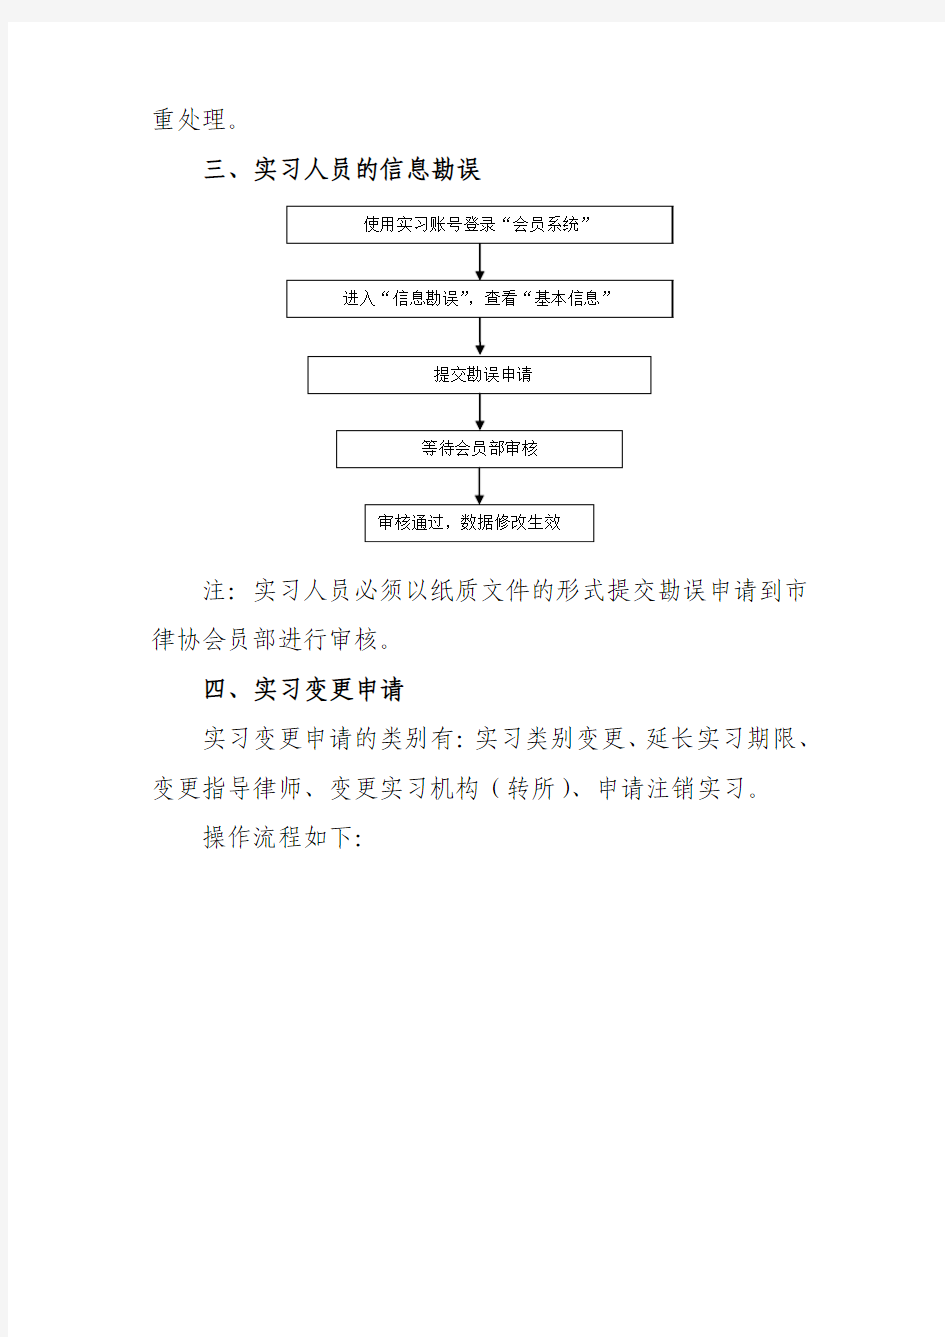 实习人员使用广州市律师协会新网站系统的具体说明。